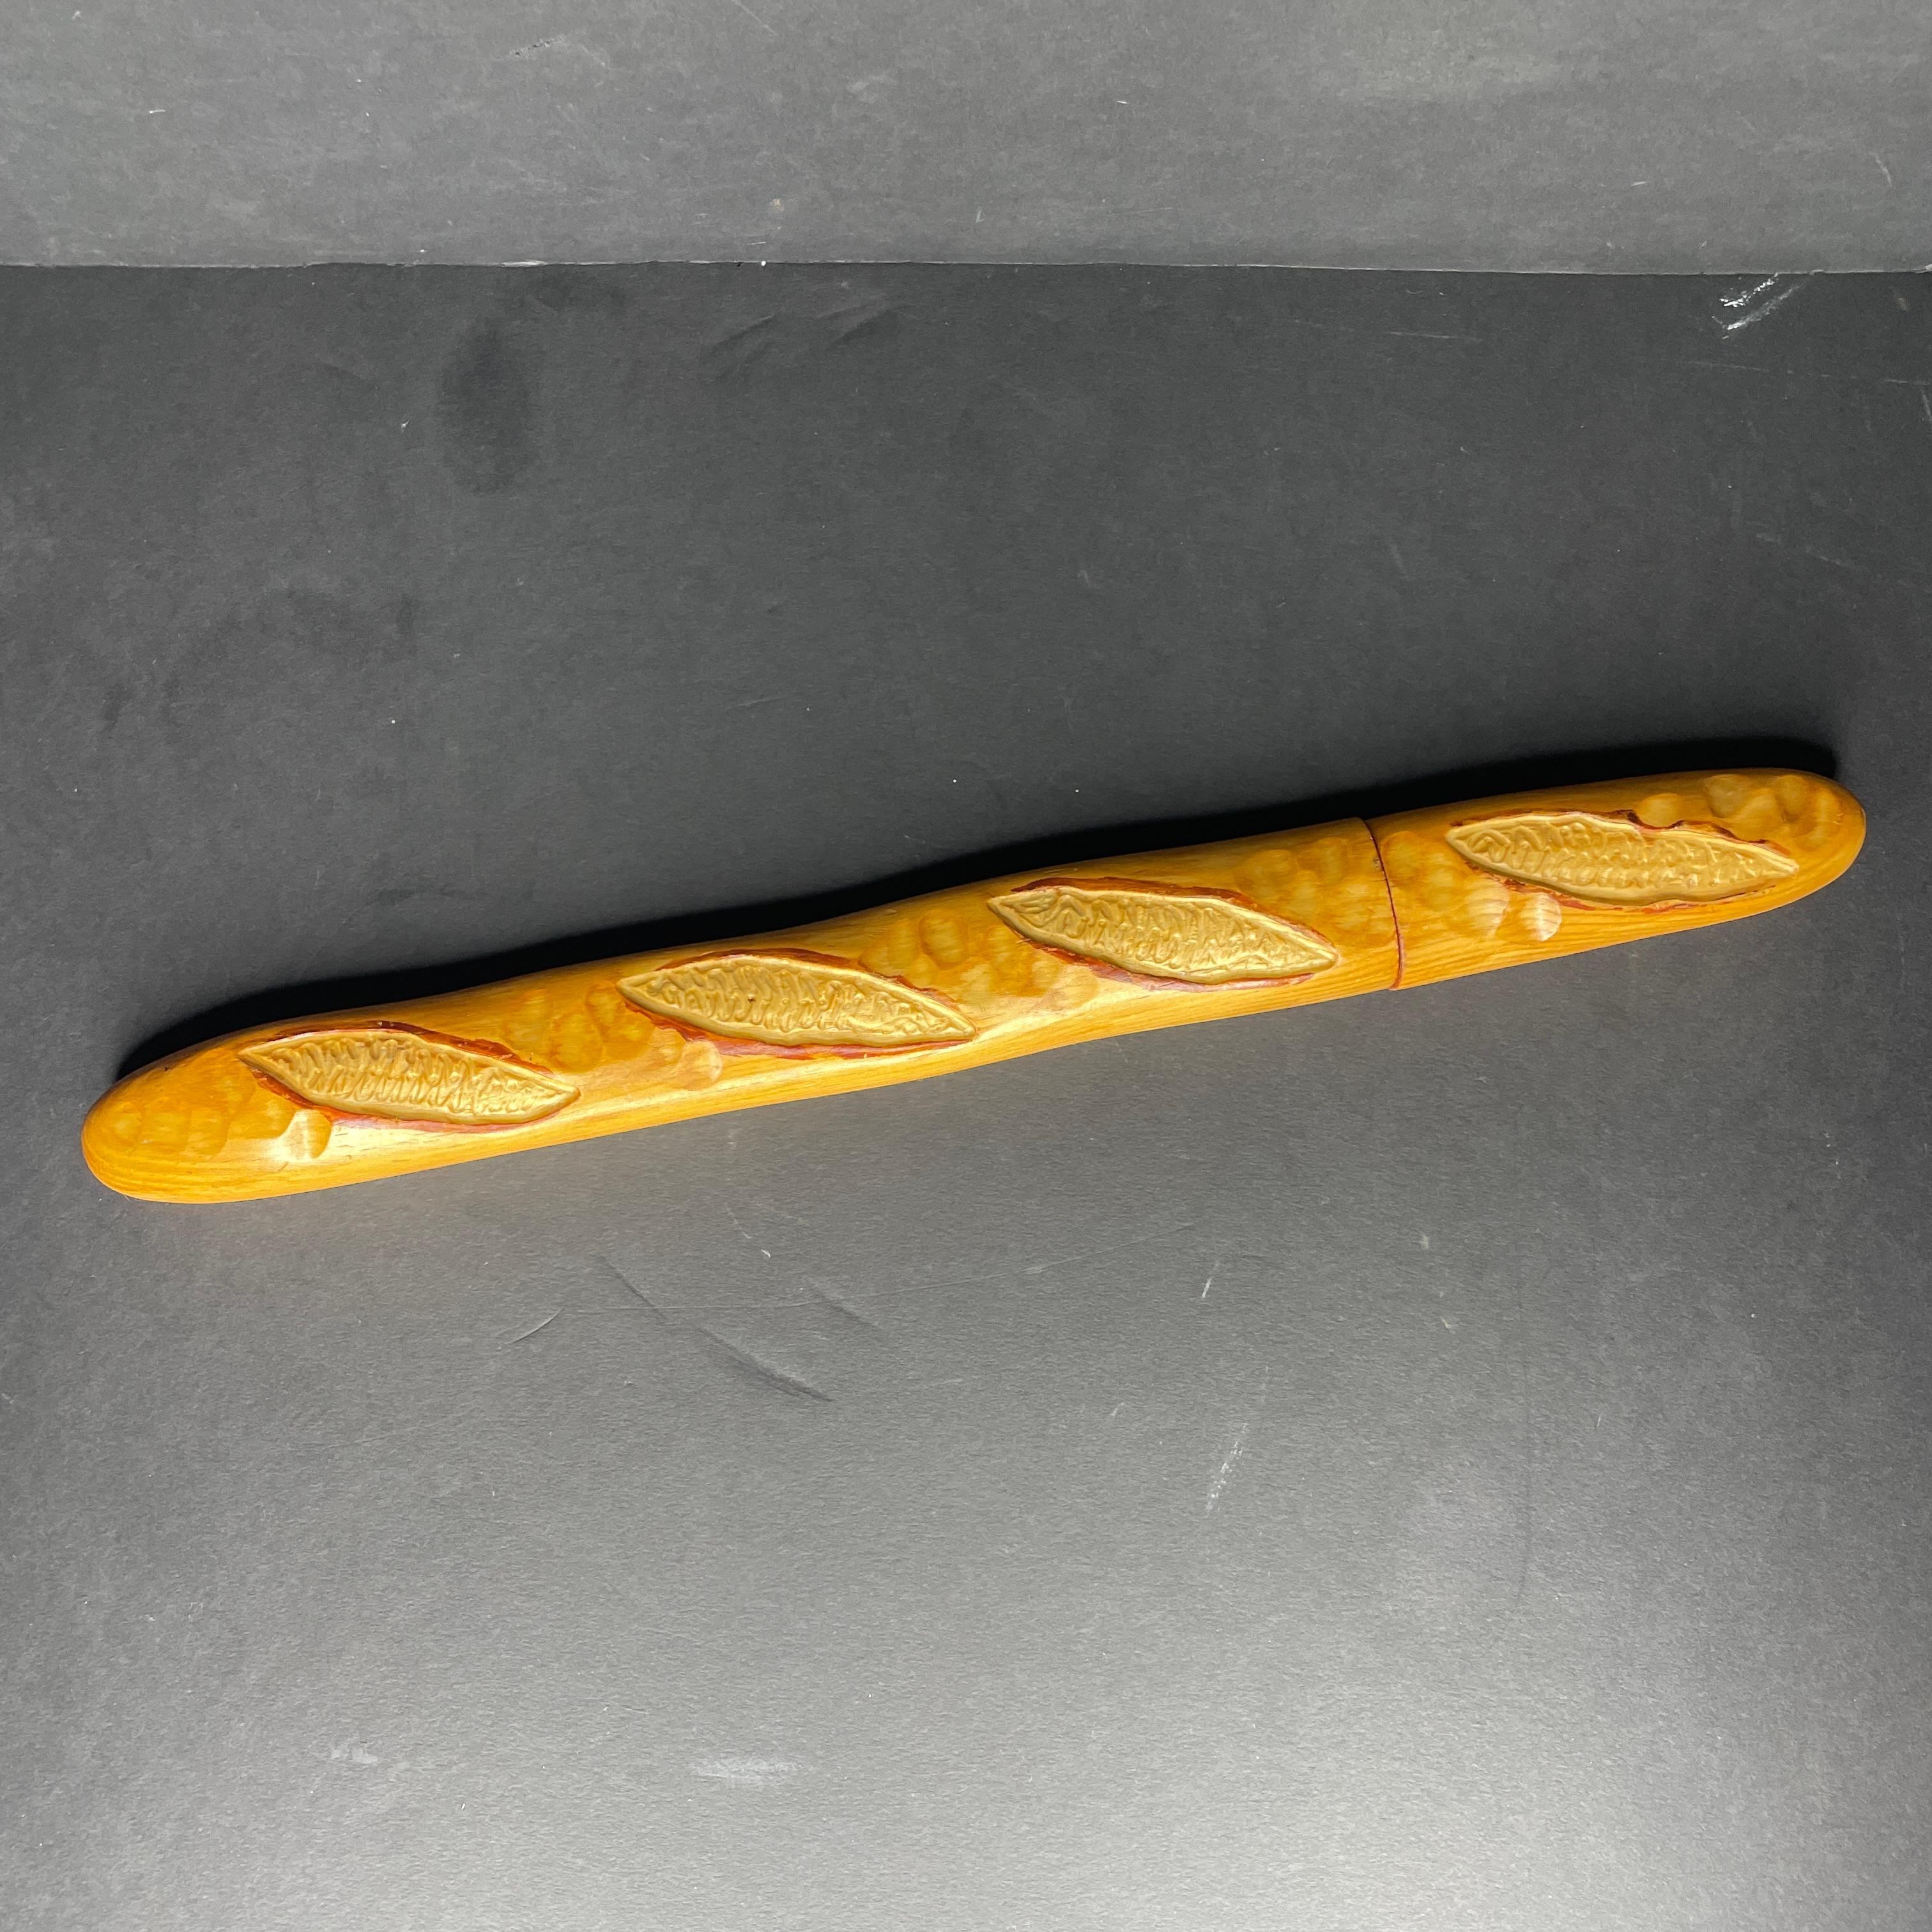 Grand couteau à pain en forme de baguette datant des années 80 et provenant de la coutellerie française Cuzin, fabriquée en France. 
Le manche est en bois, la lame est en acier inoxydable.
Estampillé dans le bois 